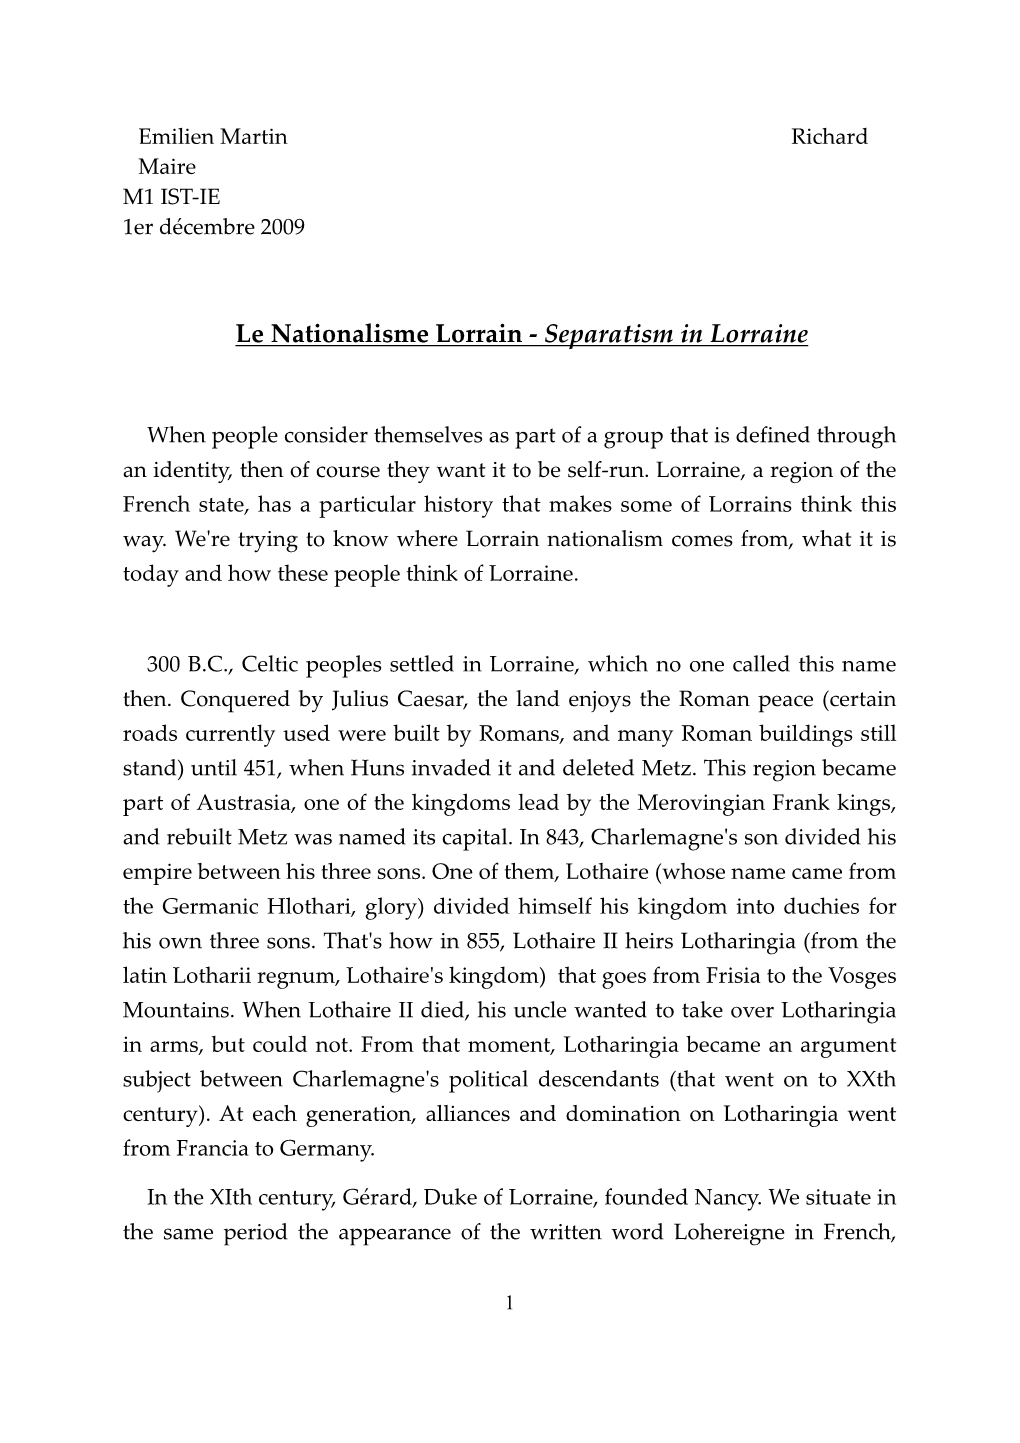 Separatism in Lorraine